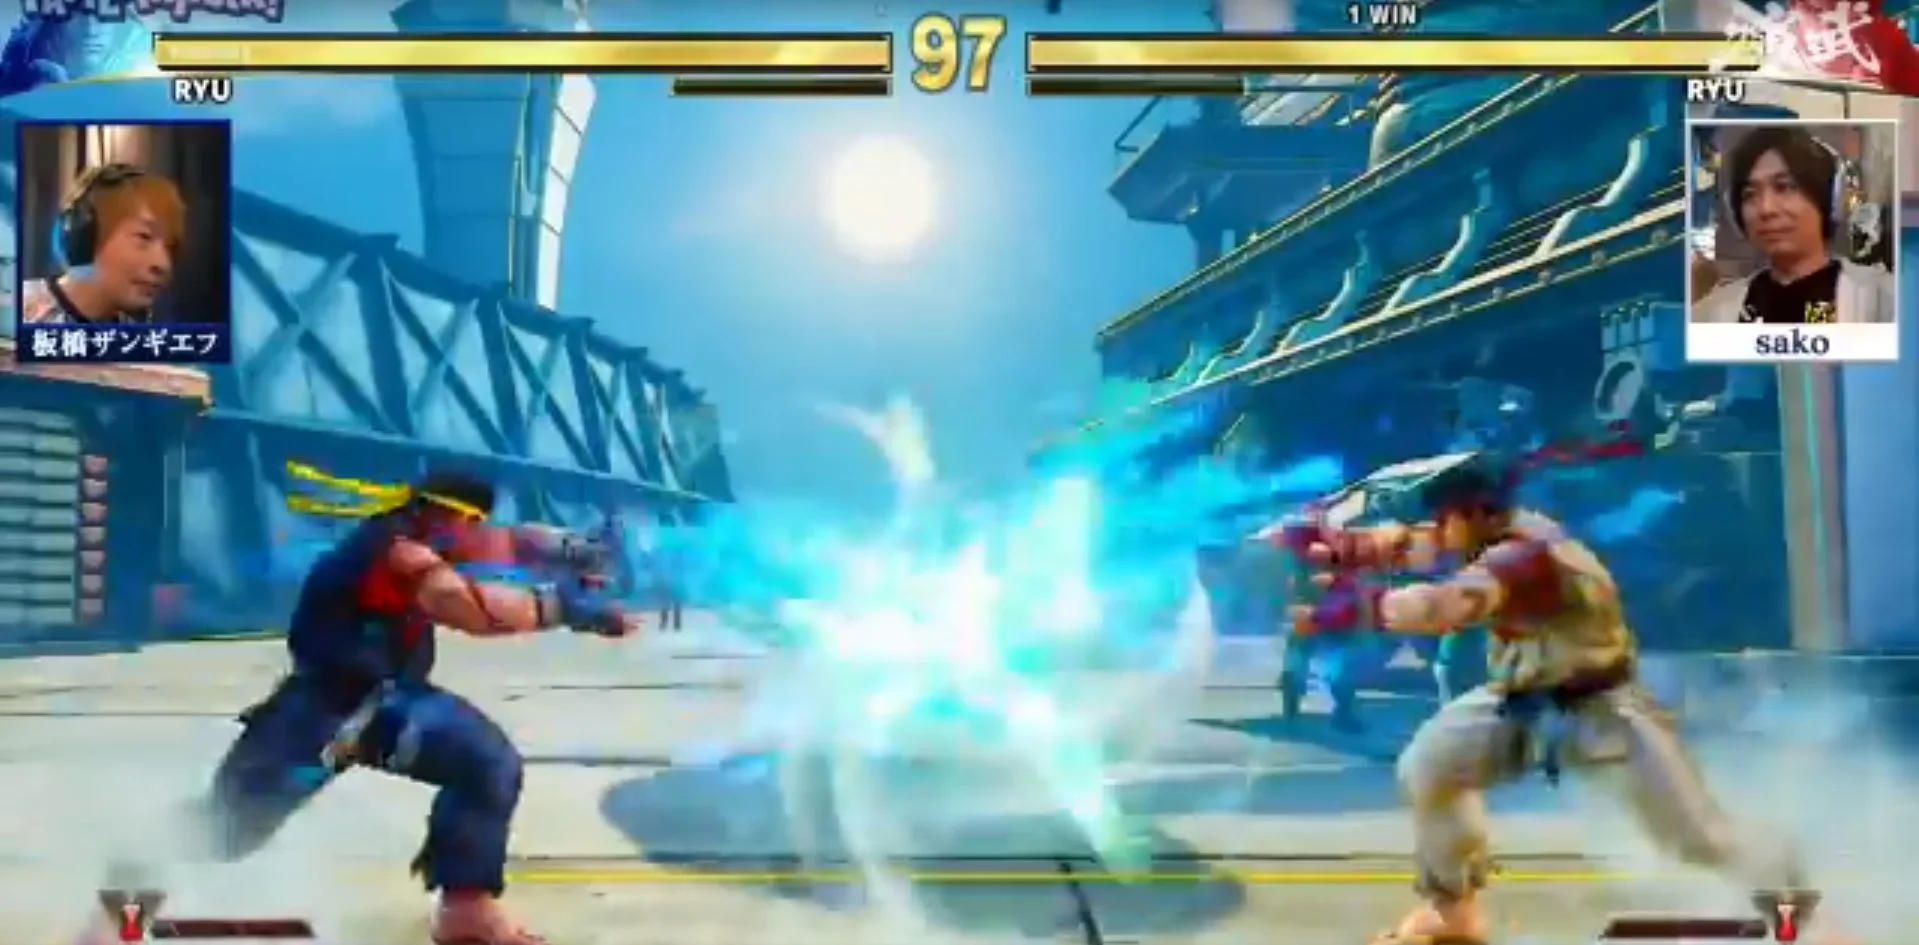 На турнире по Street Fighter V игроки 15 секунд не могли нанести урон, используя одинаковые приемы - фото 1